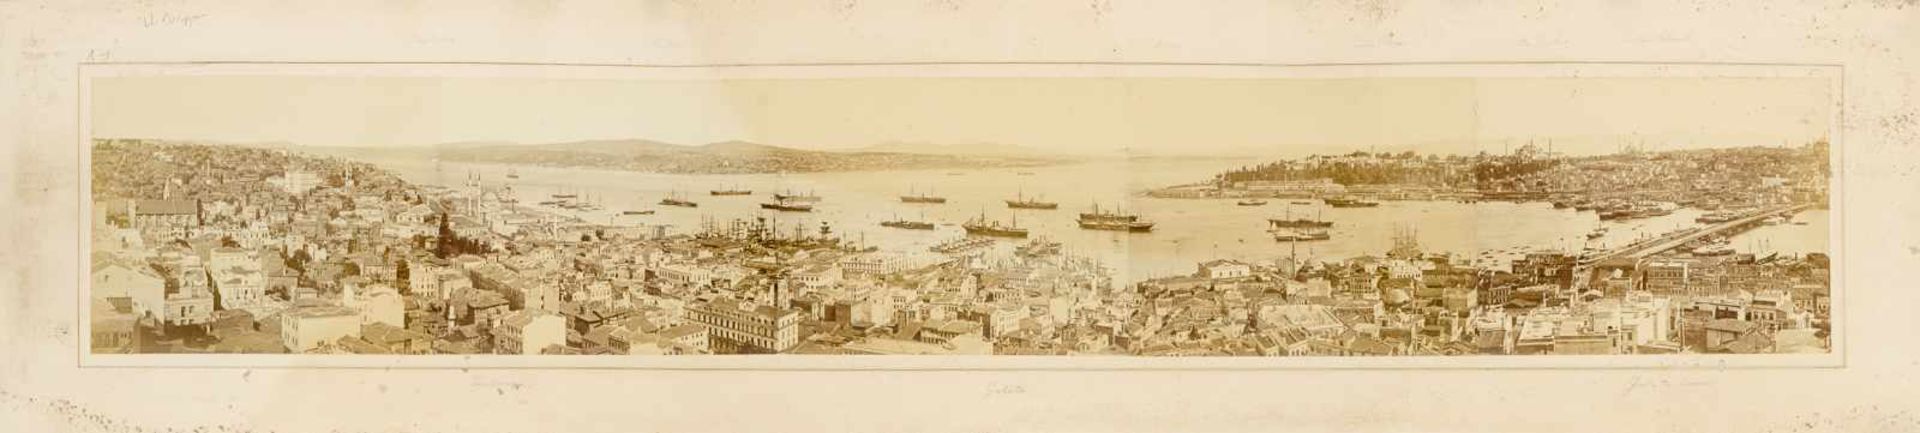 Türkei - - Berggren, Guillaume Gustave. Panorama von Konstantinopel. 10 Original-Photographien auf 2